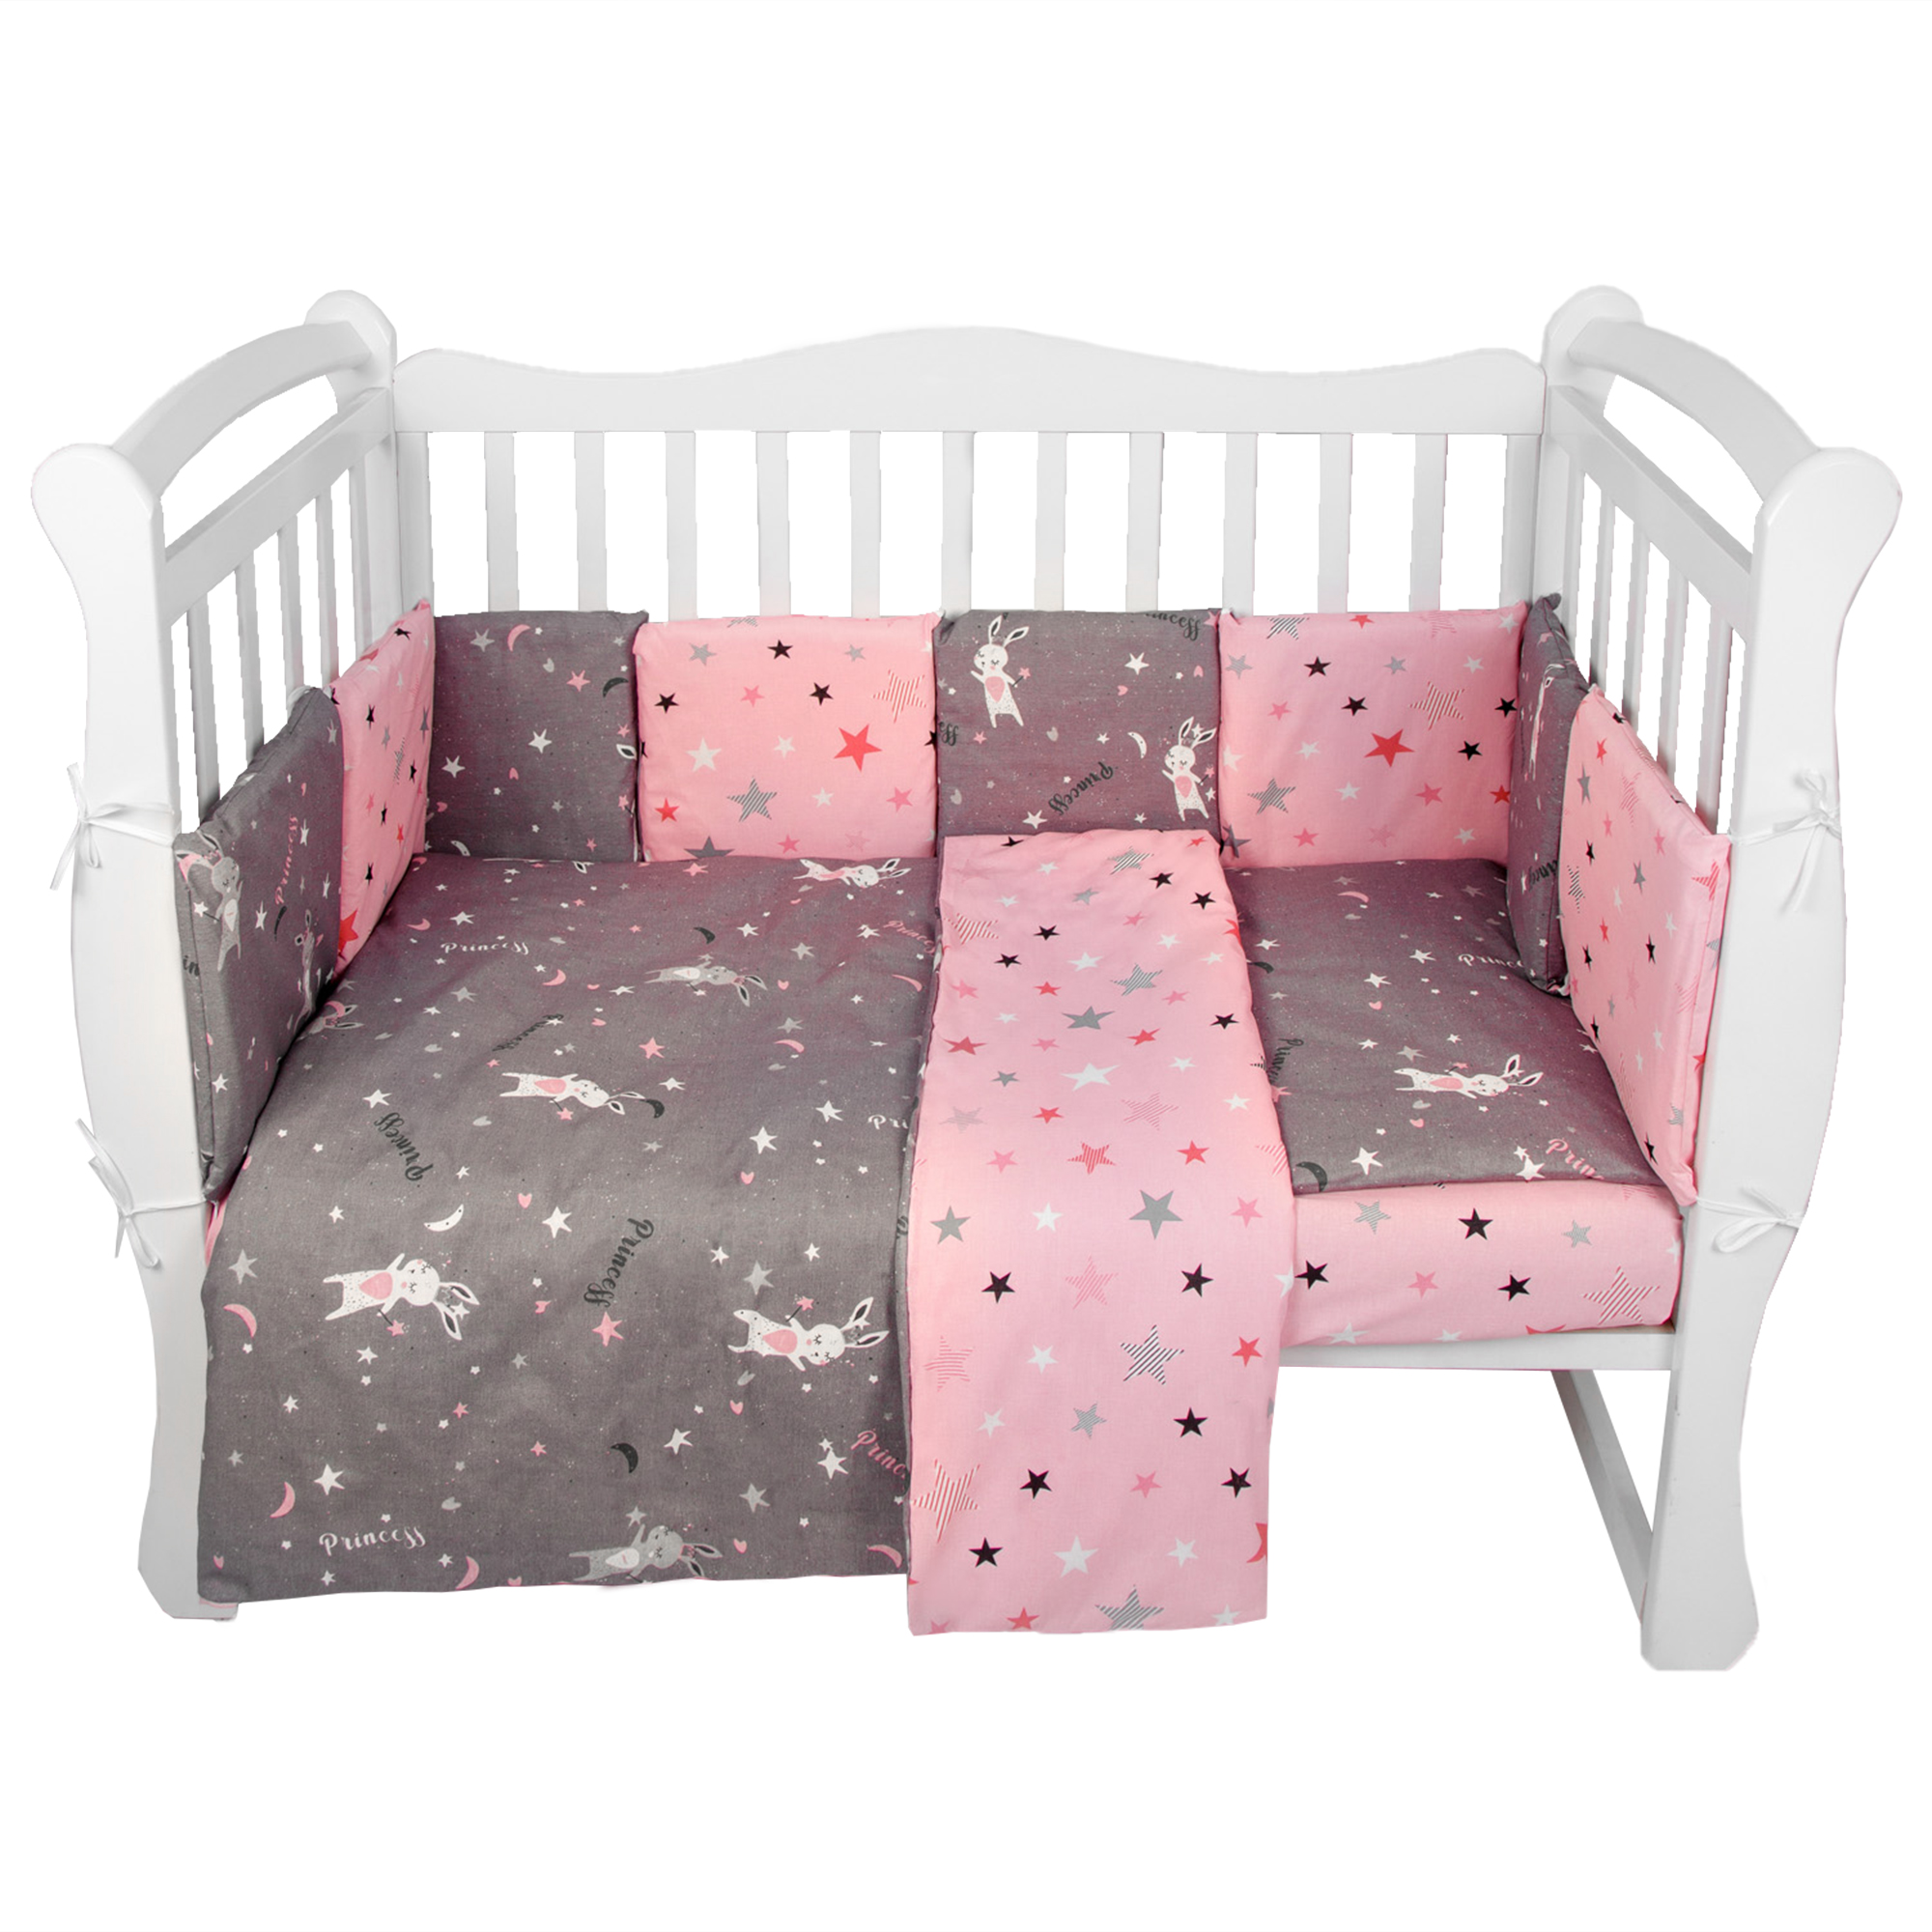 Комплект в кроватку AmaroBaby 15 предметов Premium Princess серый/розовый комплект в кроватку amarobaby ежики 15 предметов